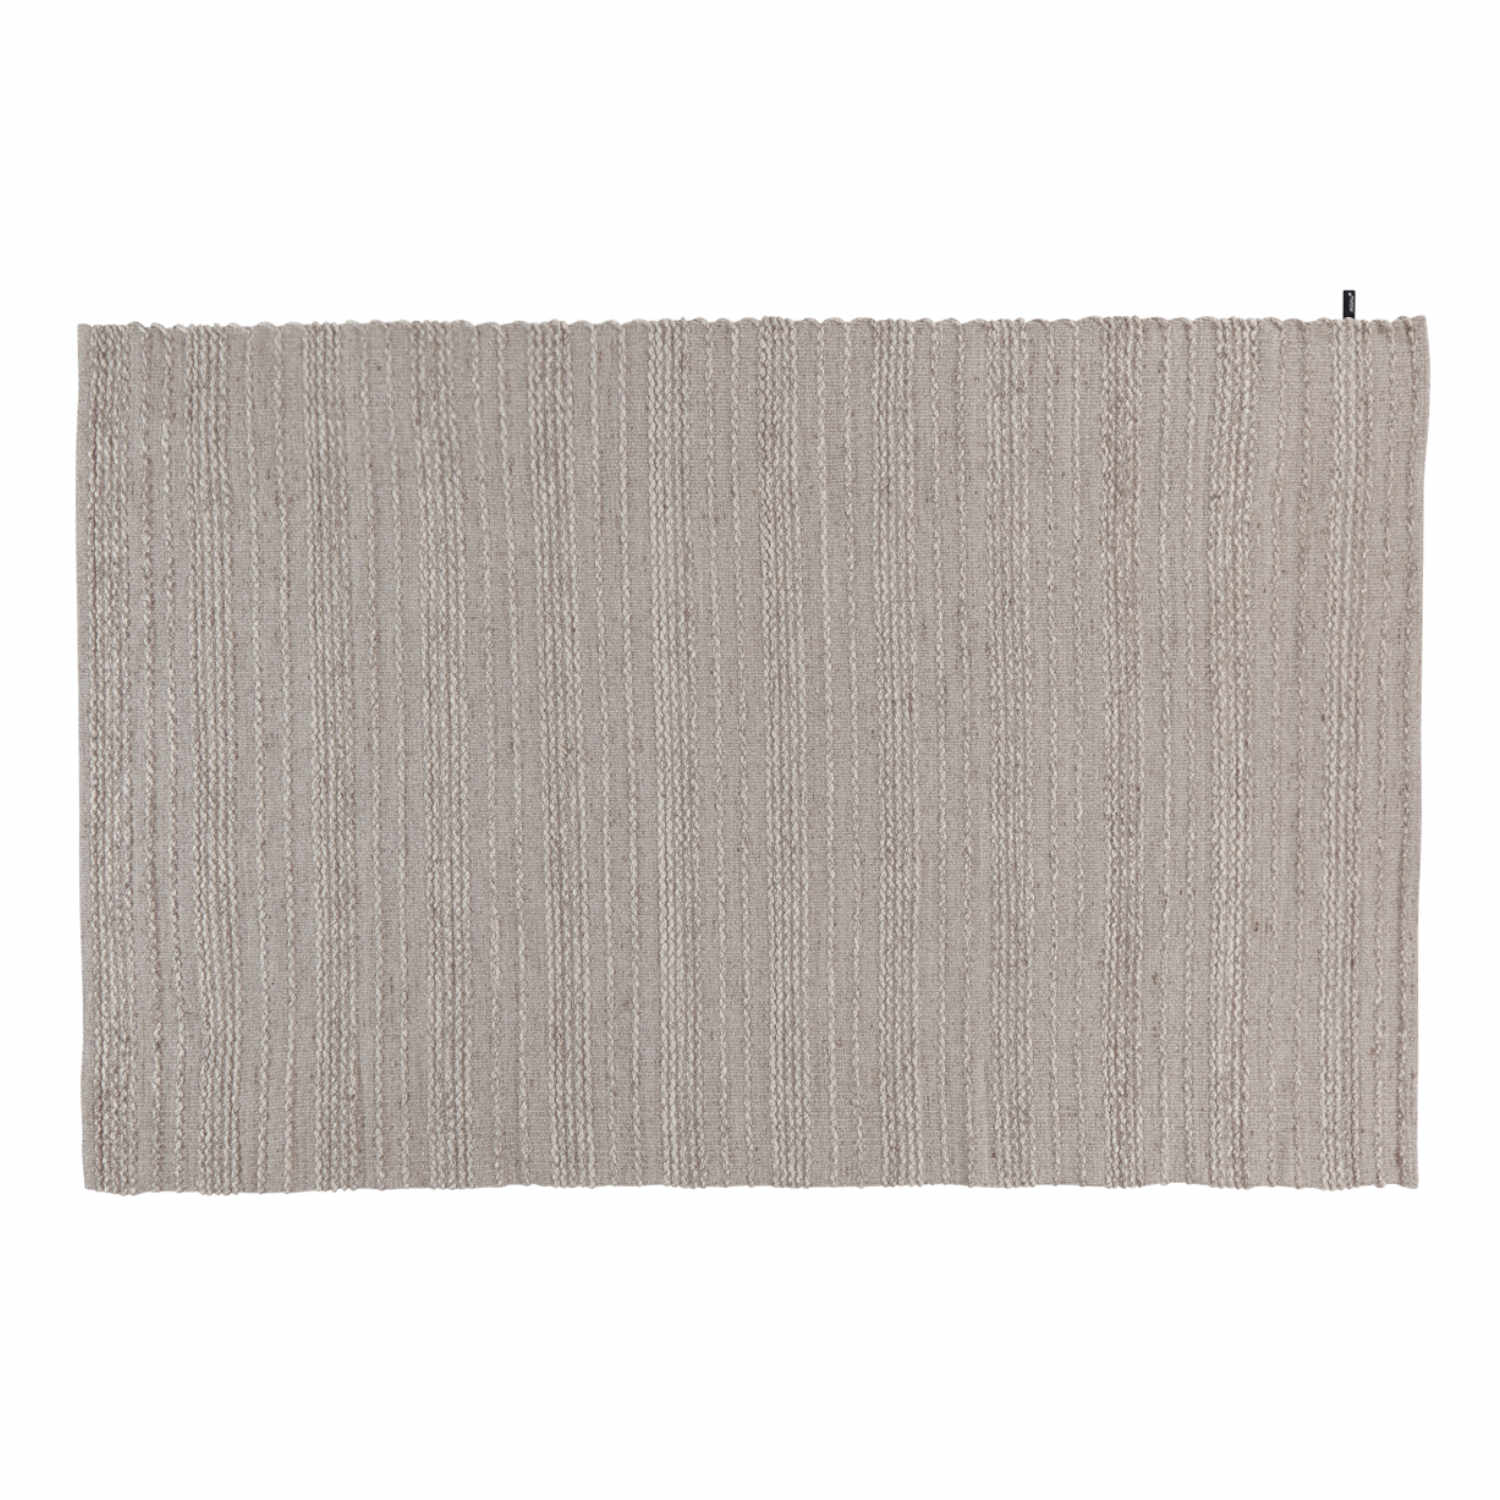 MNU 44 Teppich, Grösse 170 x 240 cm, Farbe pumice stone von miinu